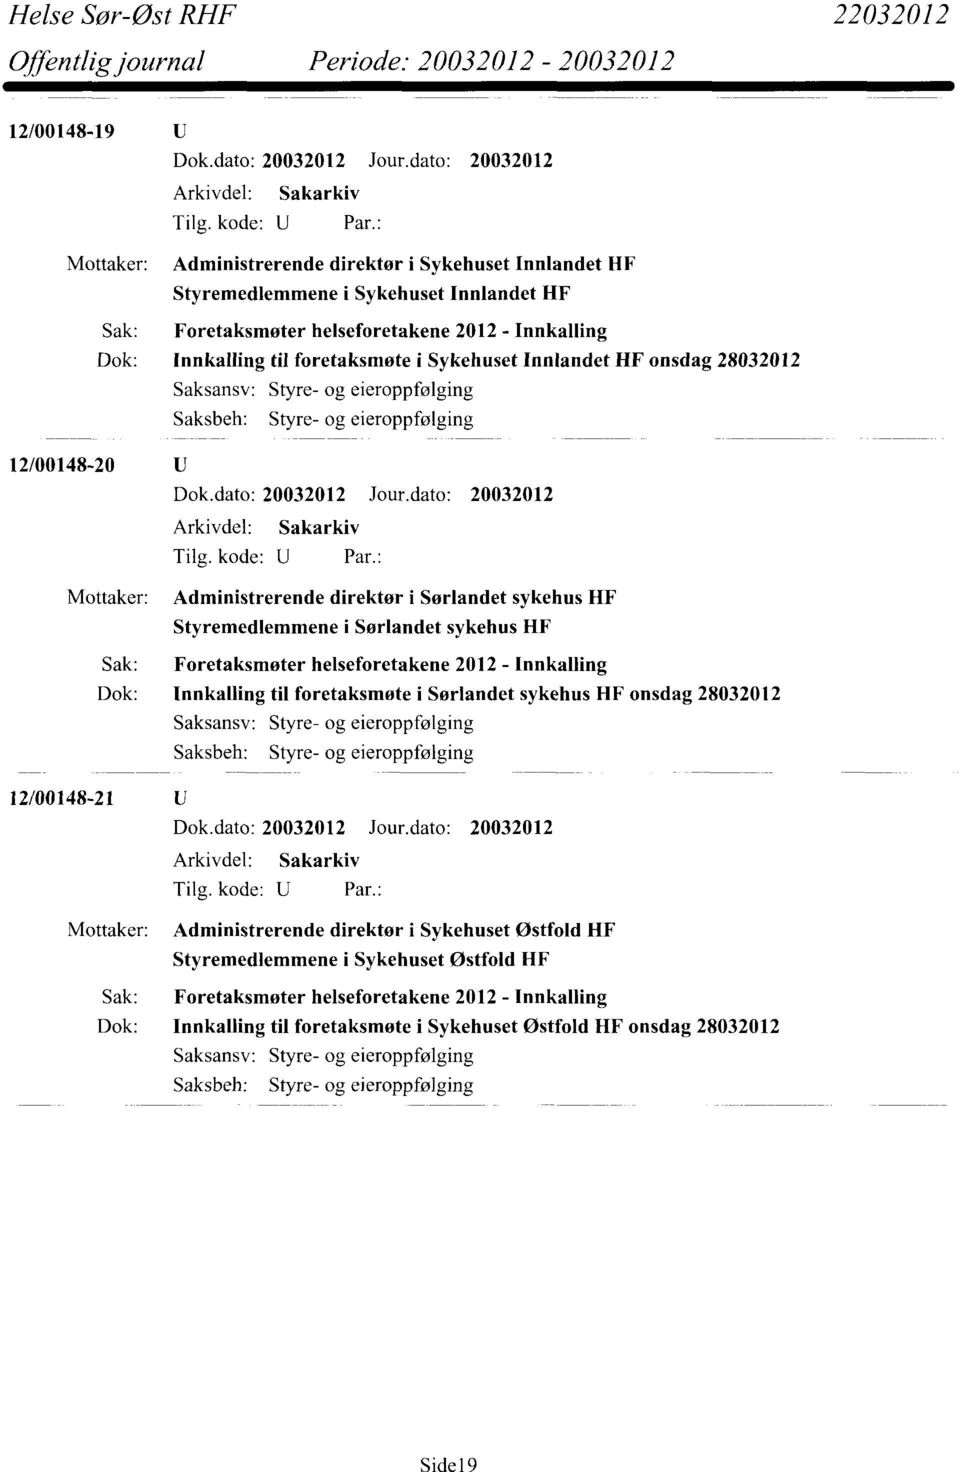 Foretaksmøter helseforetakene 2012 - Innkalling Dok: Innkalling til foretaksmøte i Sørlandet sykehus HF onsdag 28032012 Saksbeh: Styre- og eieroppfølging 12/00148-21 Mottaker: Administrerende